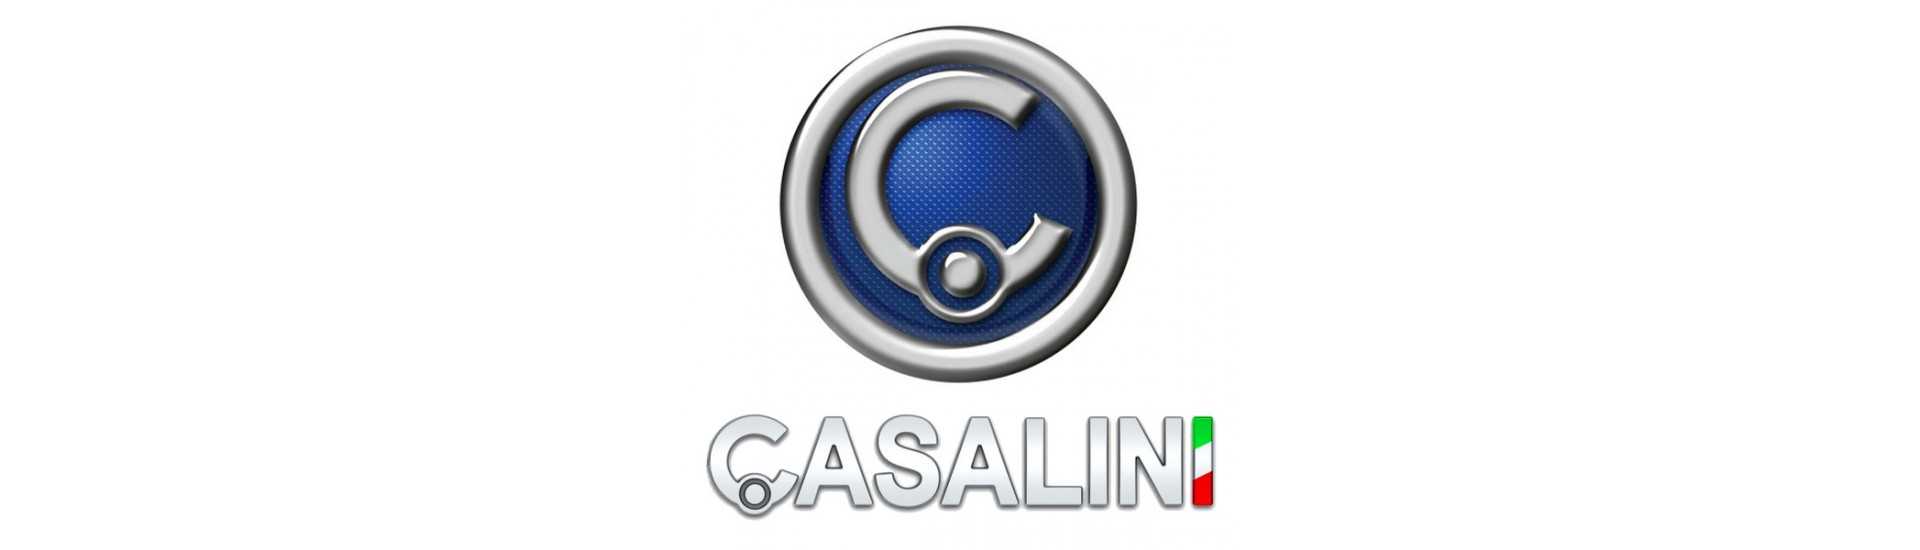 Cardan al mejor precio para coche sin permiso Casalini